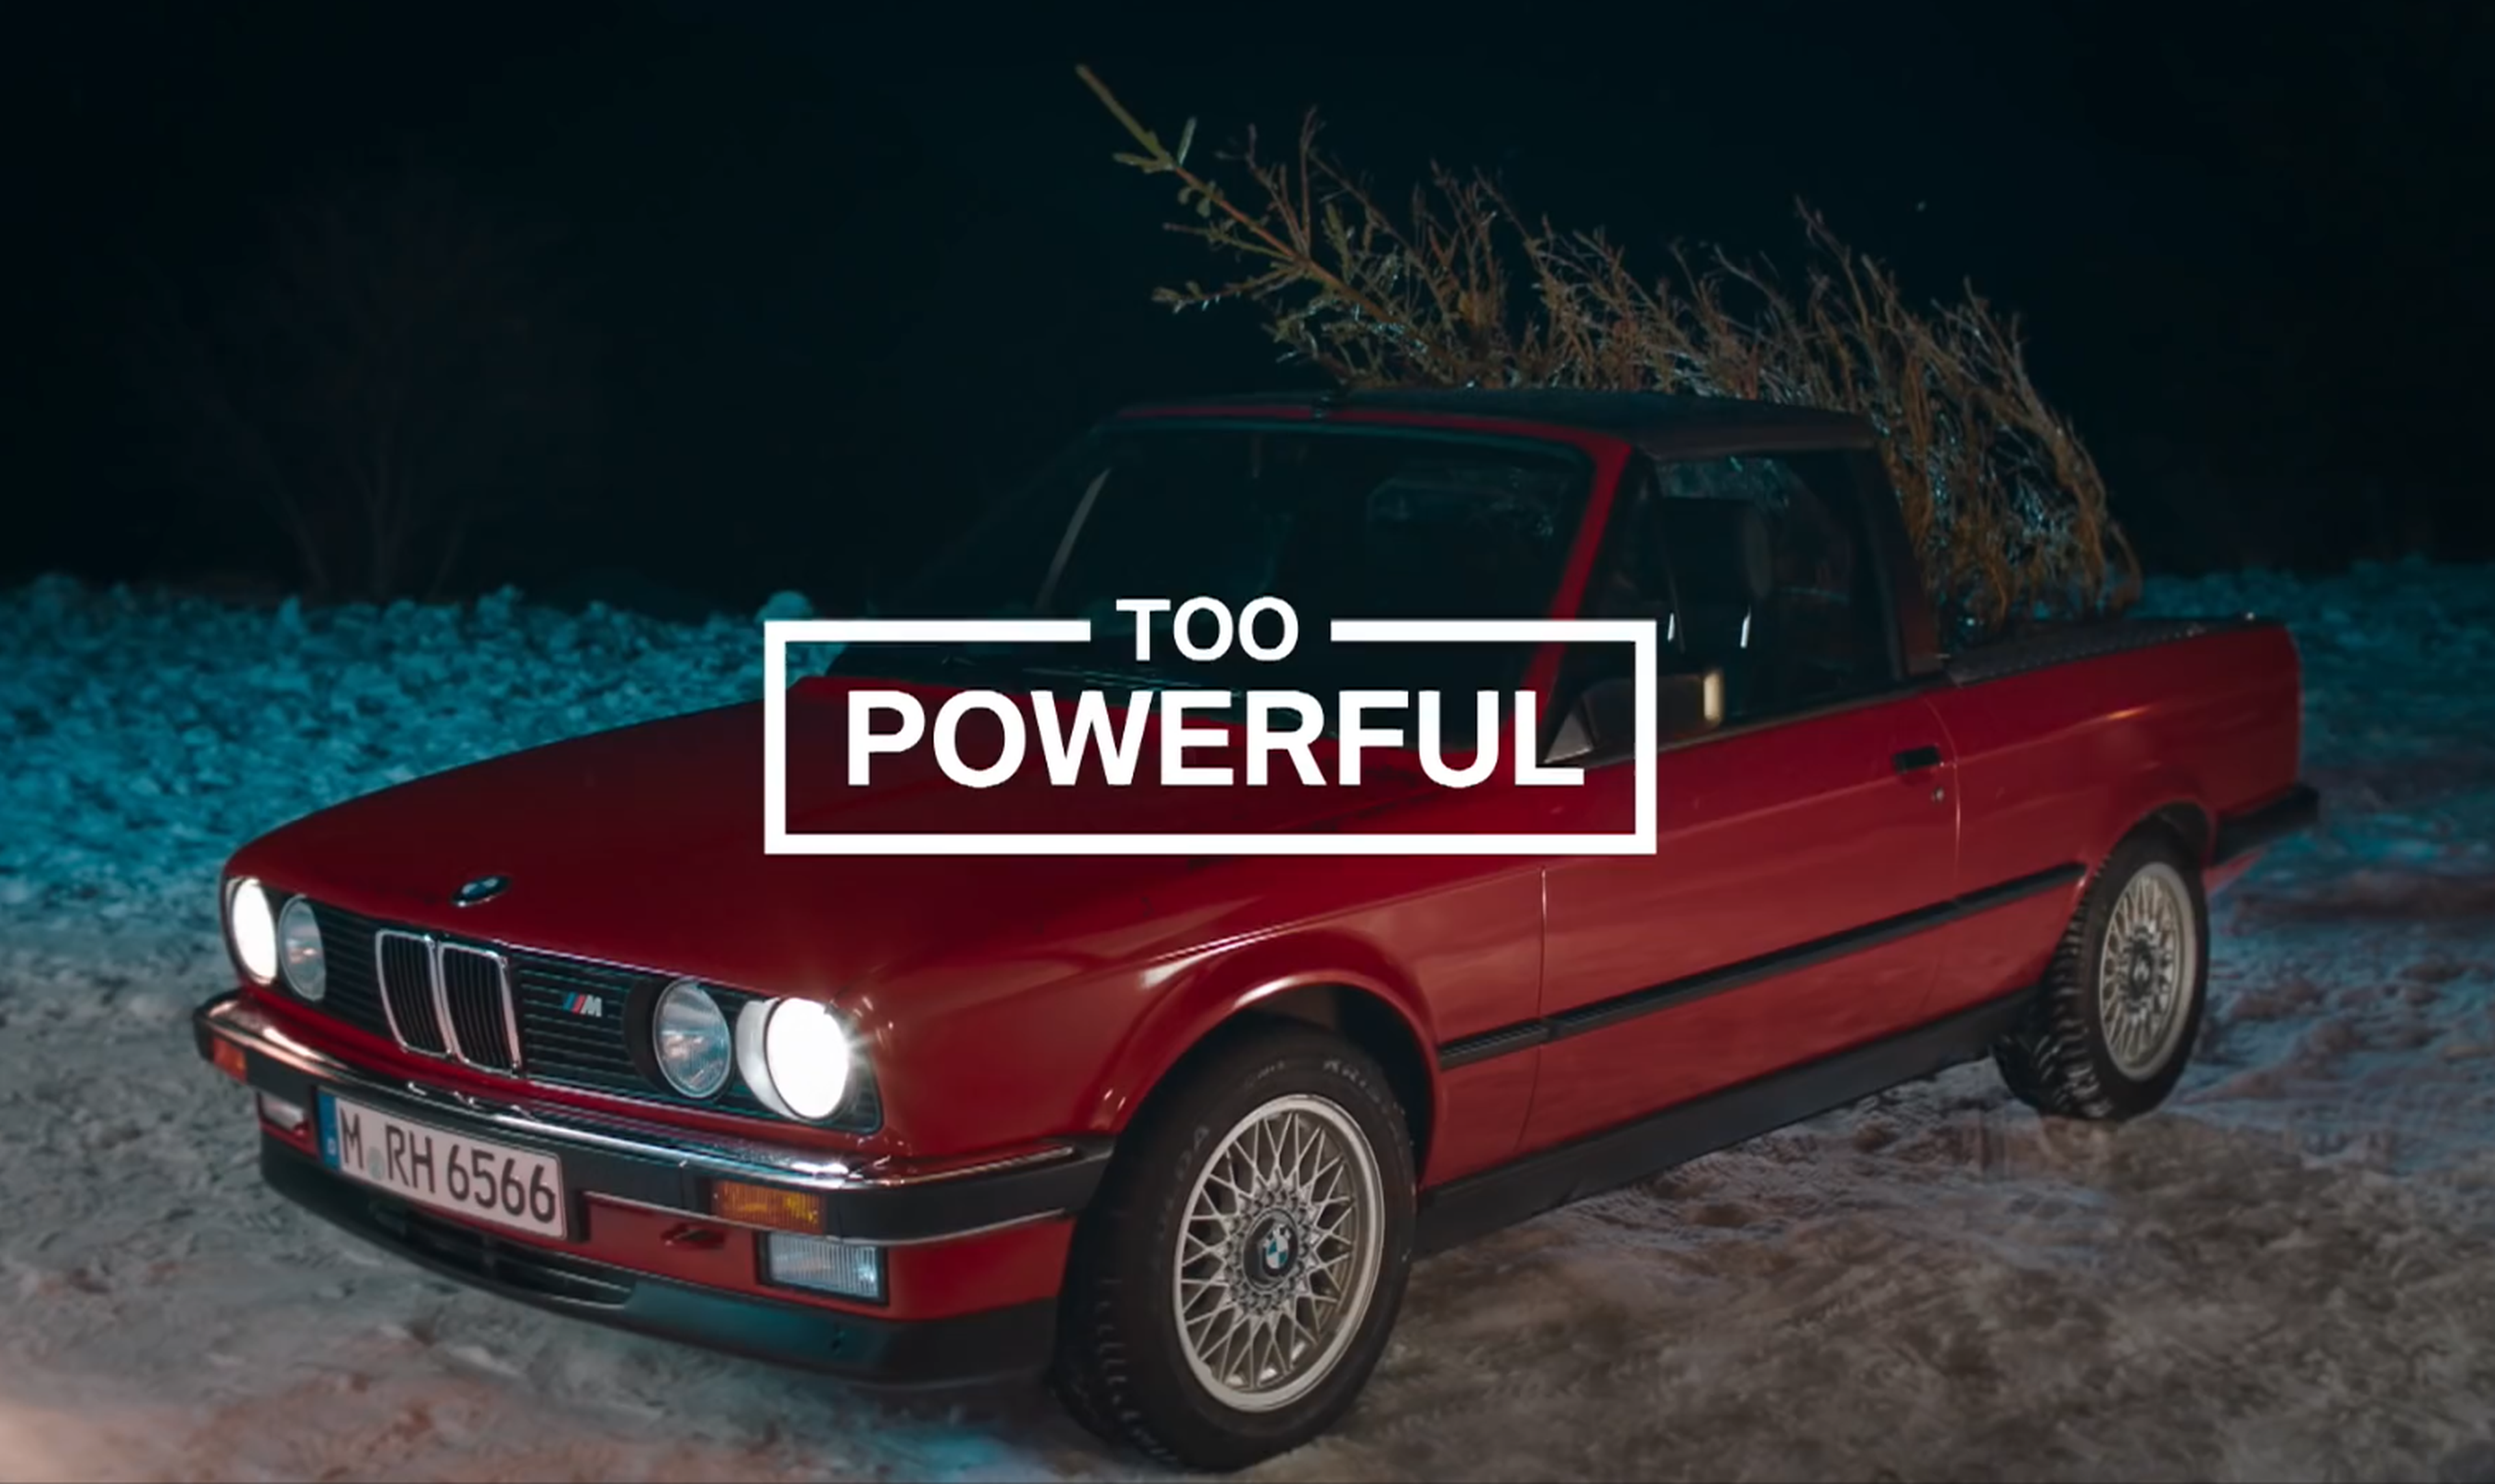 VÍDEO: Así se transporta un árbol de Navidad en un BMW (TG)